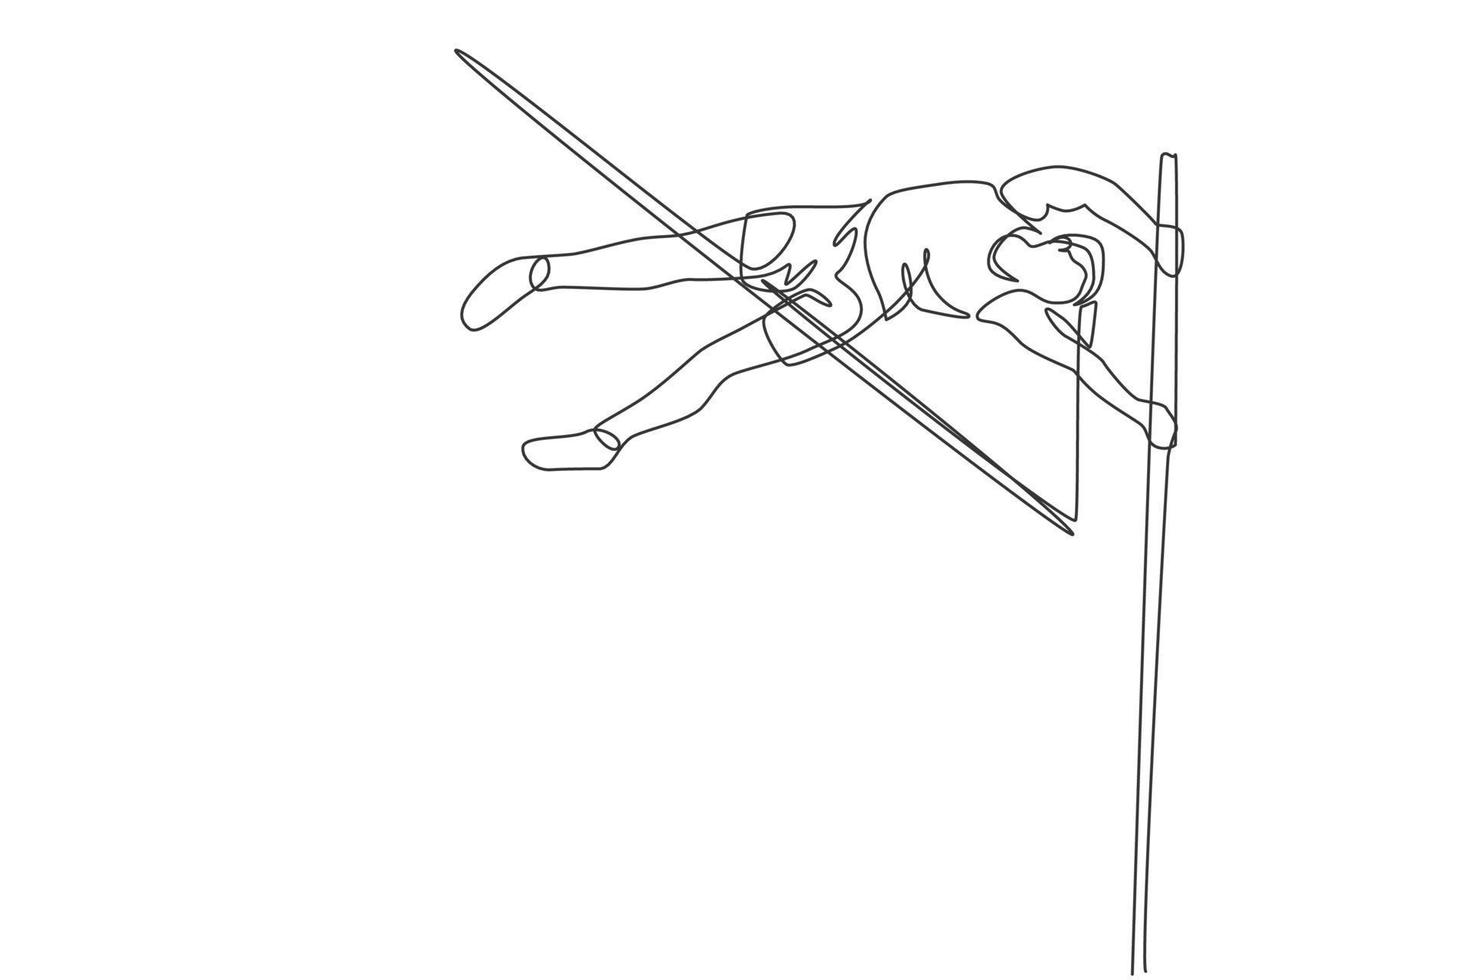 un dibujo de una sola línea del ejercicio de una mujer joven y enérgica para pasar el listón en la ilustración vectorial del juego de salto con pértiga. concepto de deporte atlético saludable. evento de competencia diseño moderno de dibujo de línea continua vector